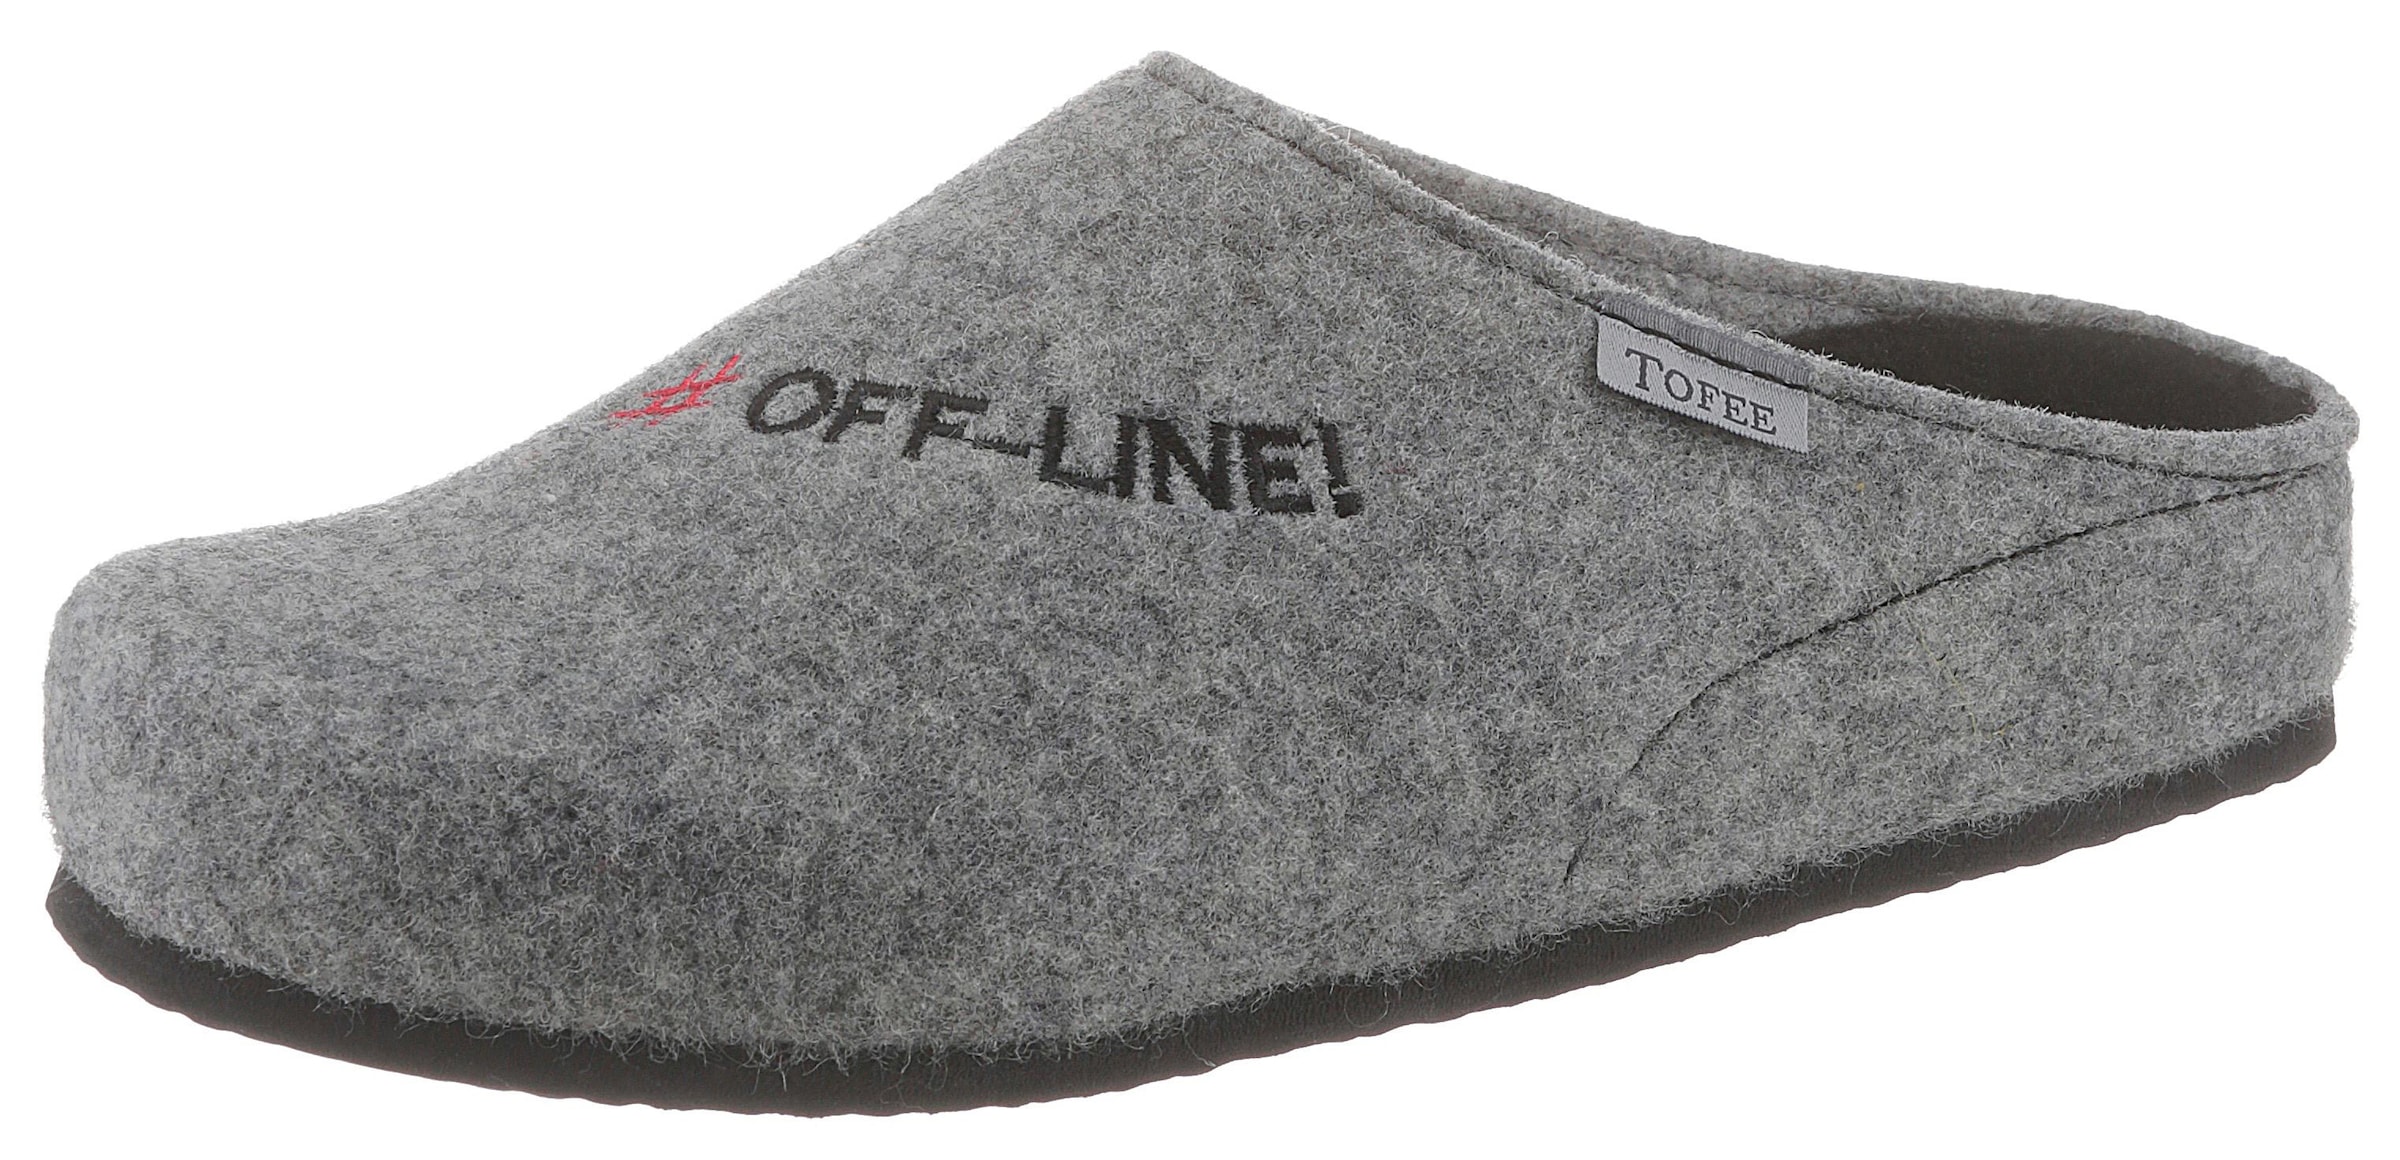 Tofee Pantoffel, mit Schriftzug "#Off-Line!"